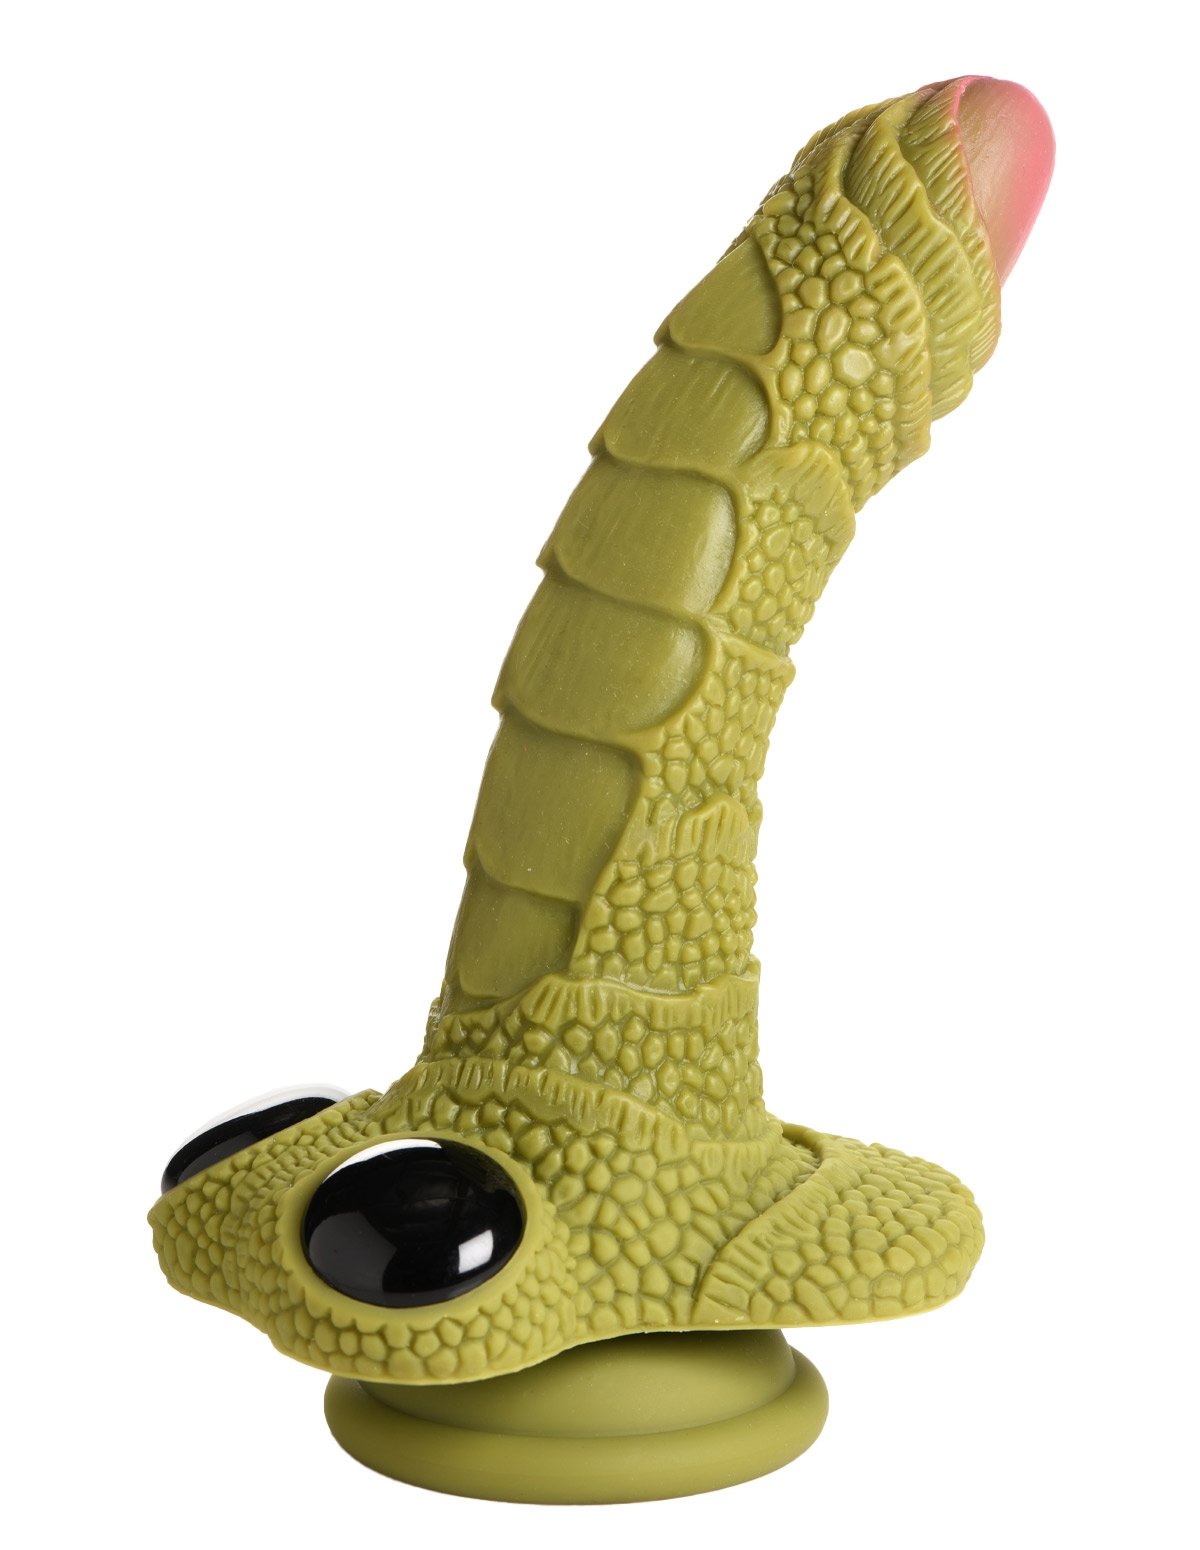 alternate image for Creature Cocks Swamp Monster Dildo